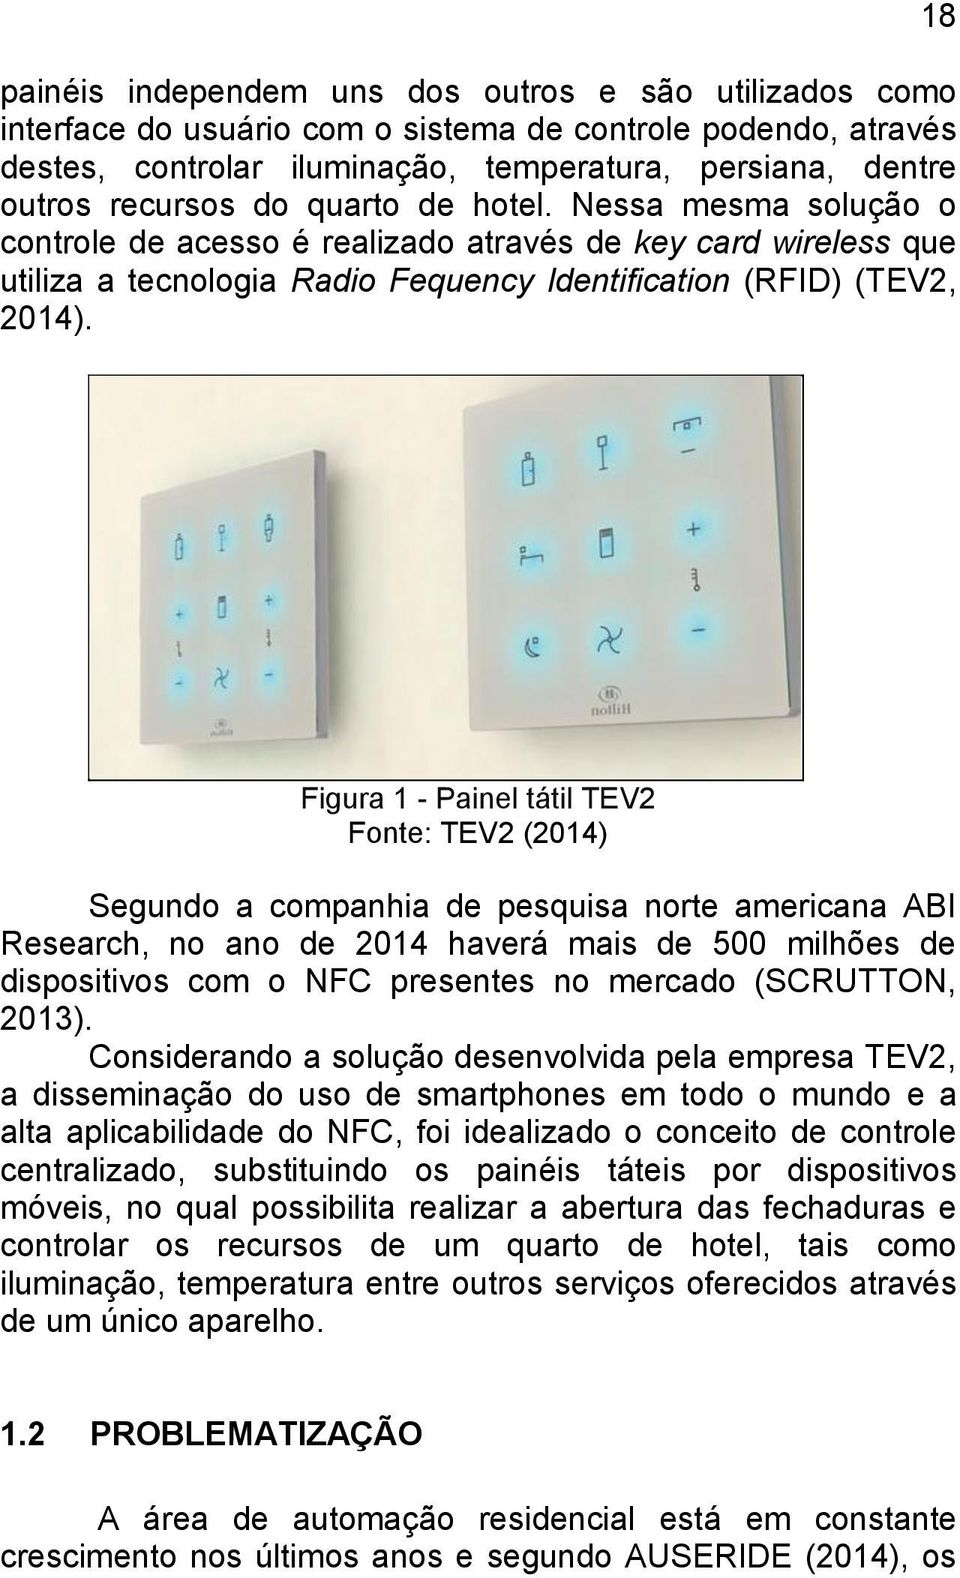 Figura 1 - Painel tátil TEV2 Fonte: TEV2 (2014) Segundo a companhia de pesquisa norte americana ABI Research, no ano de 2014 haverá mais de 500 milhões de dispositivos com o NFC presentes no mercado